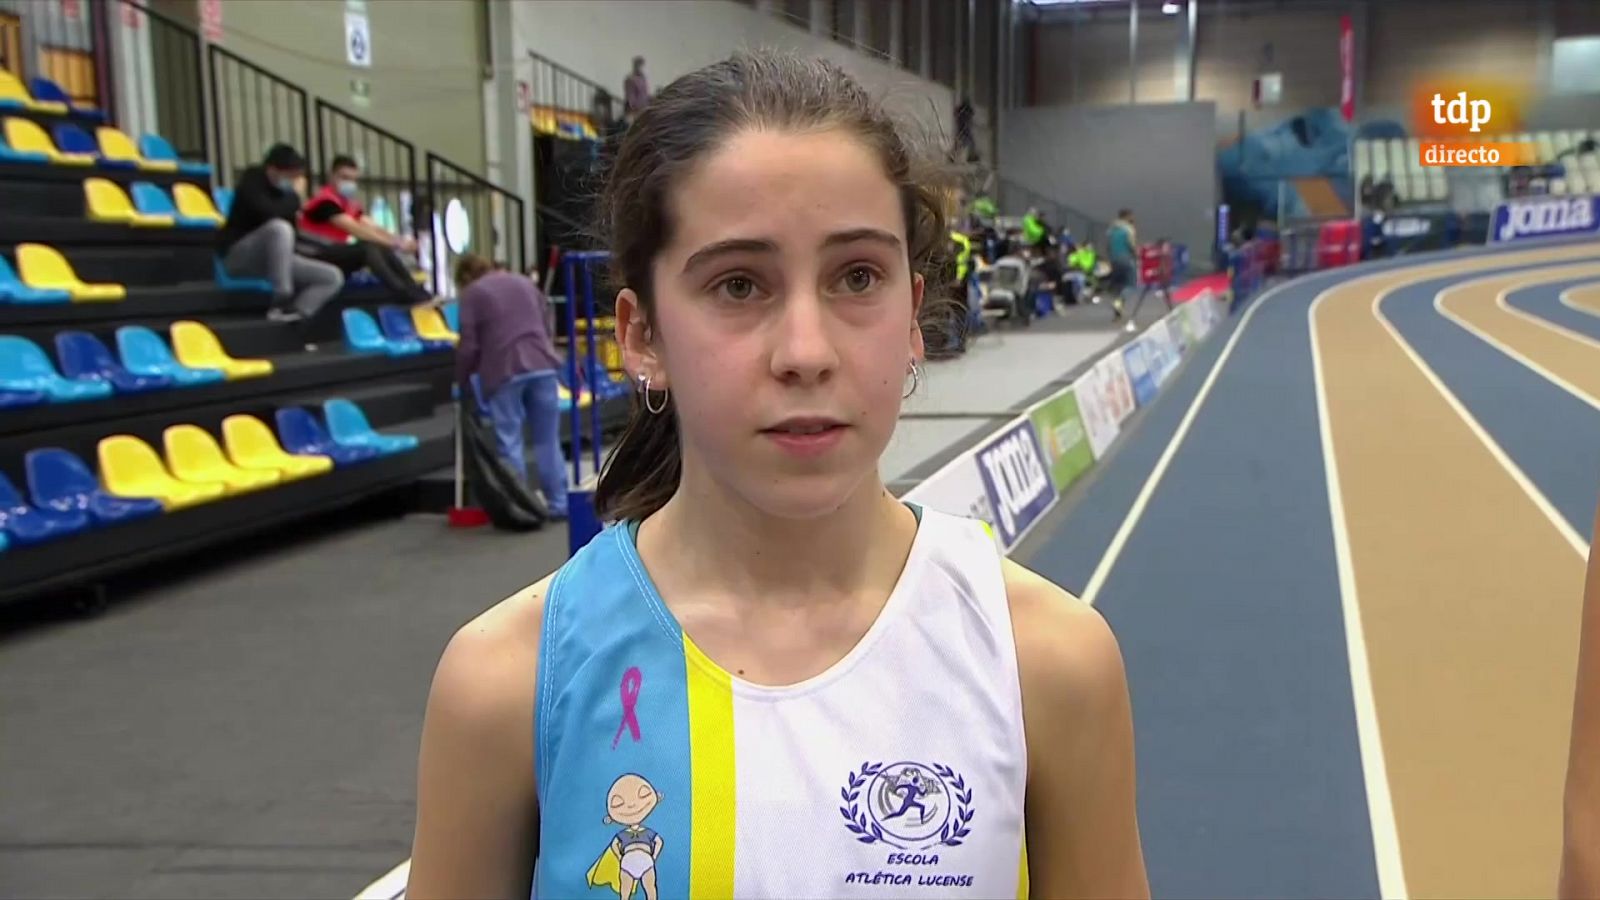 La atleta Xela Martínez, de 16 años, causa sensación y se mete en la final del 3.000: "A disfrutar" -- Ver ahora